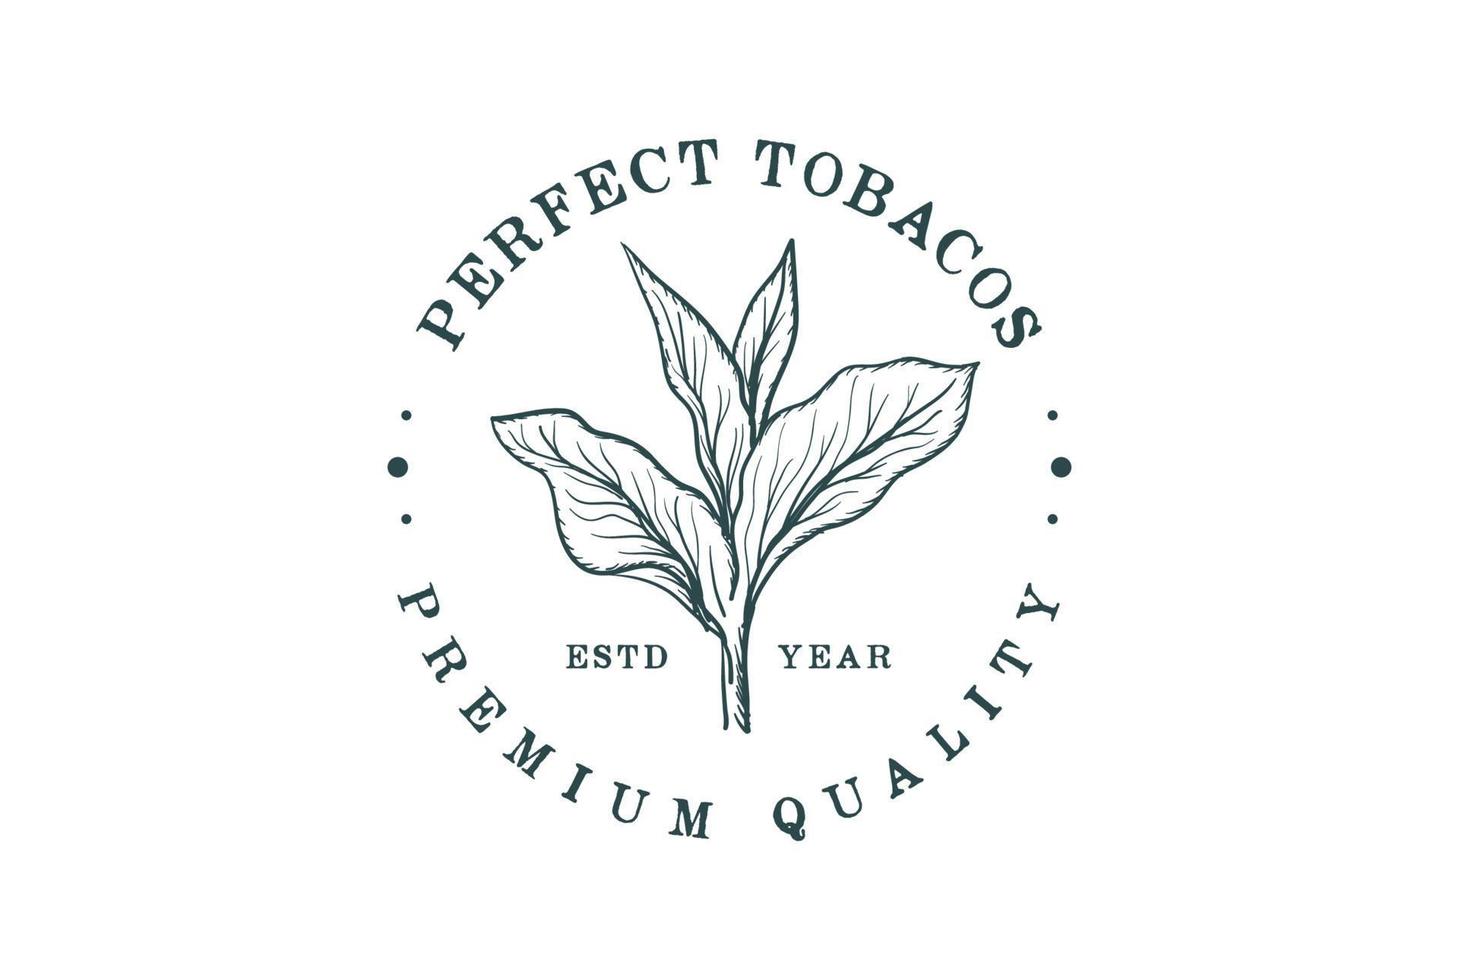 årgång retro hand dra skiss tobak växt träd blad löv för cigarr bricka emblem märka logotyp design vektor